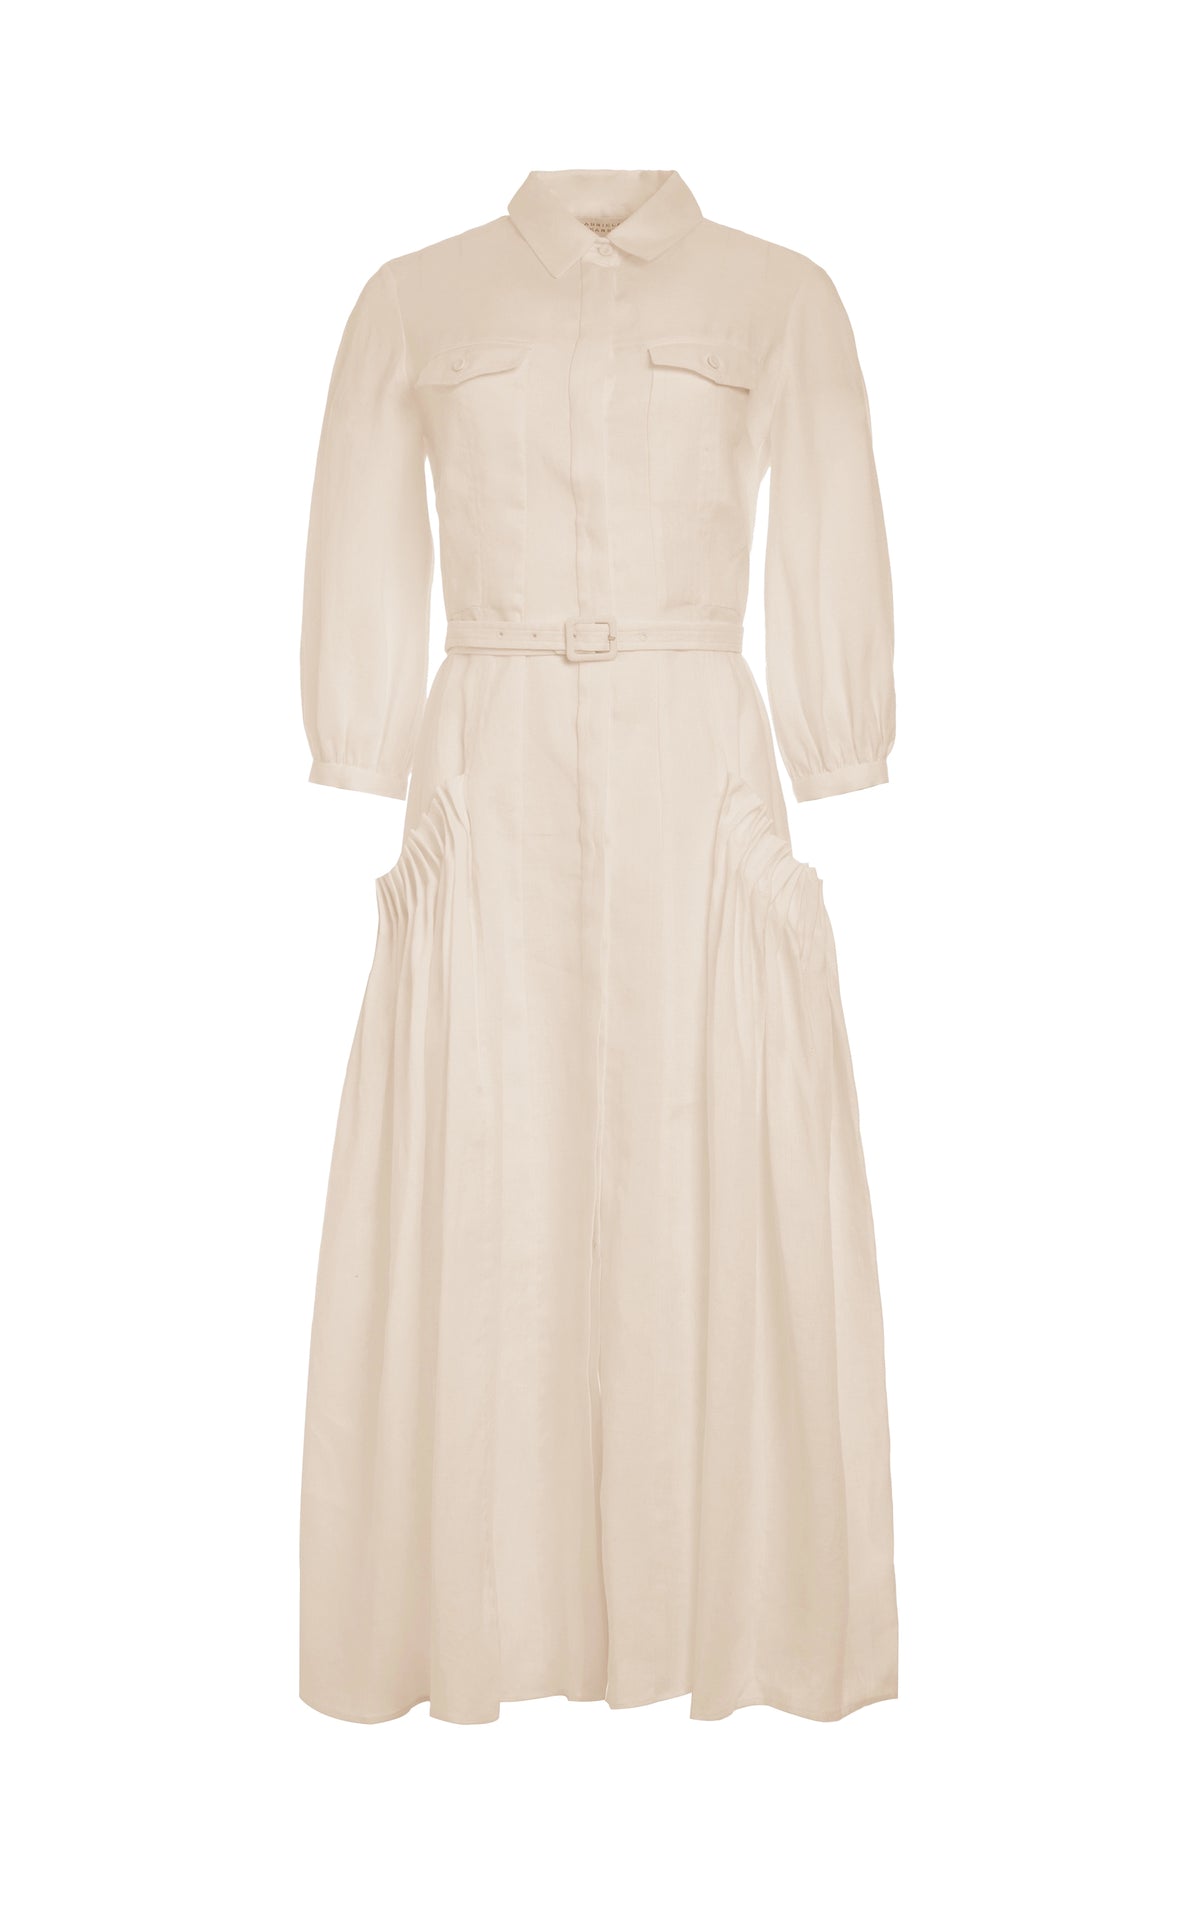 Woodward Dress in Linen – Gabriela Hearst